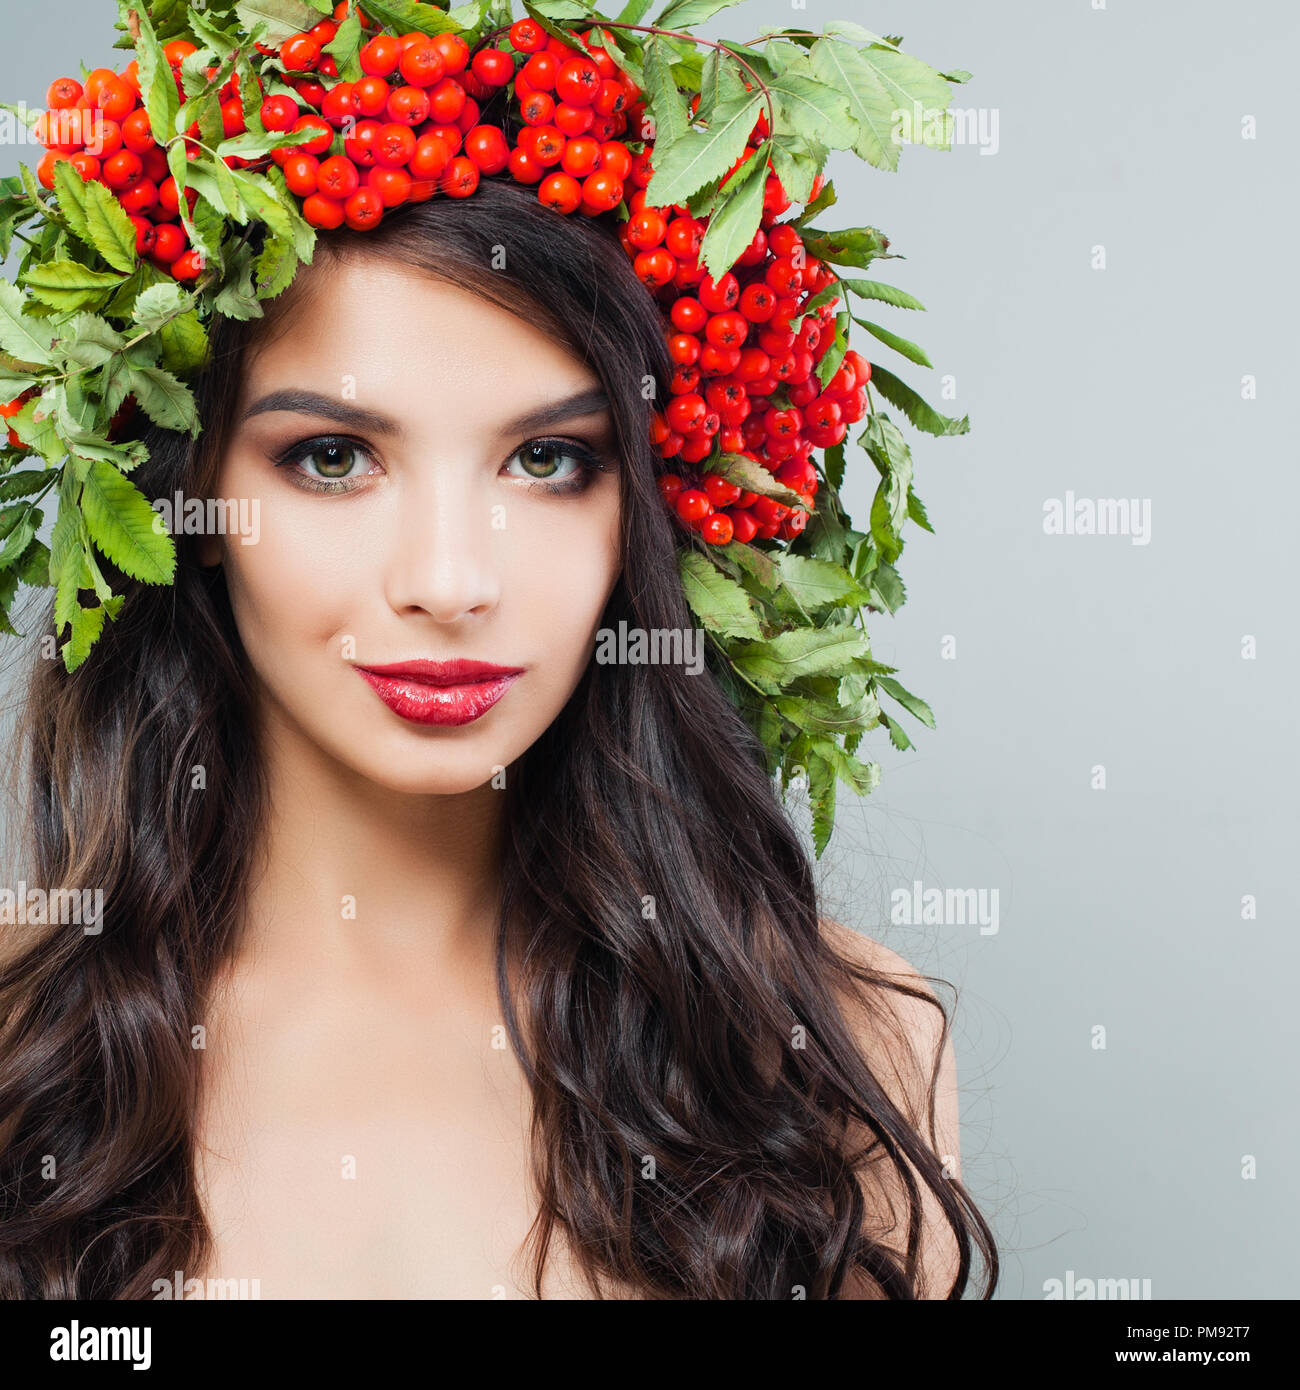 Junge Frau Gesicht. Brunette weibliche Modell mit Langen lockigen Frisur und roten Beeren und grüne Blätter auf dem Kopf Stockfoto